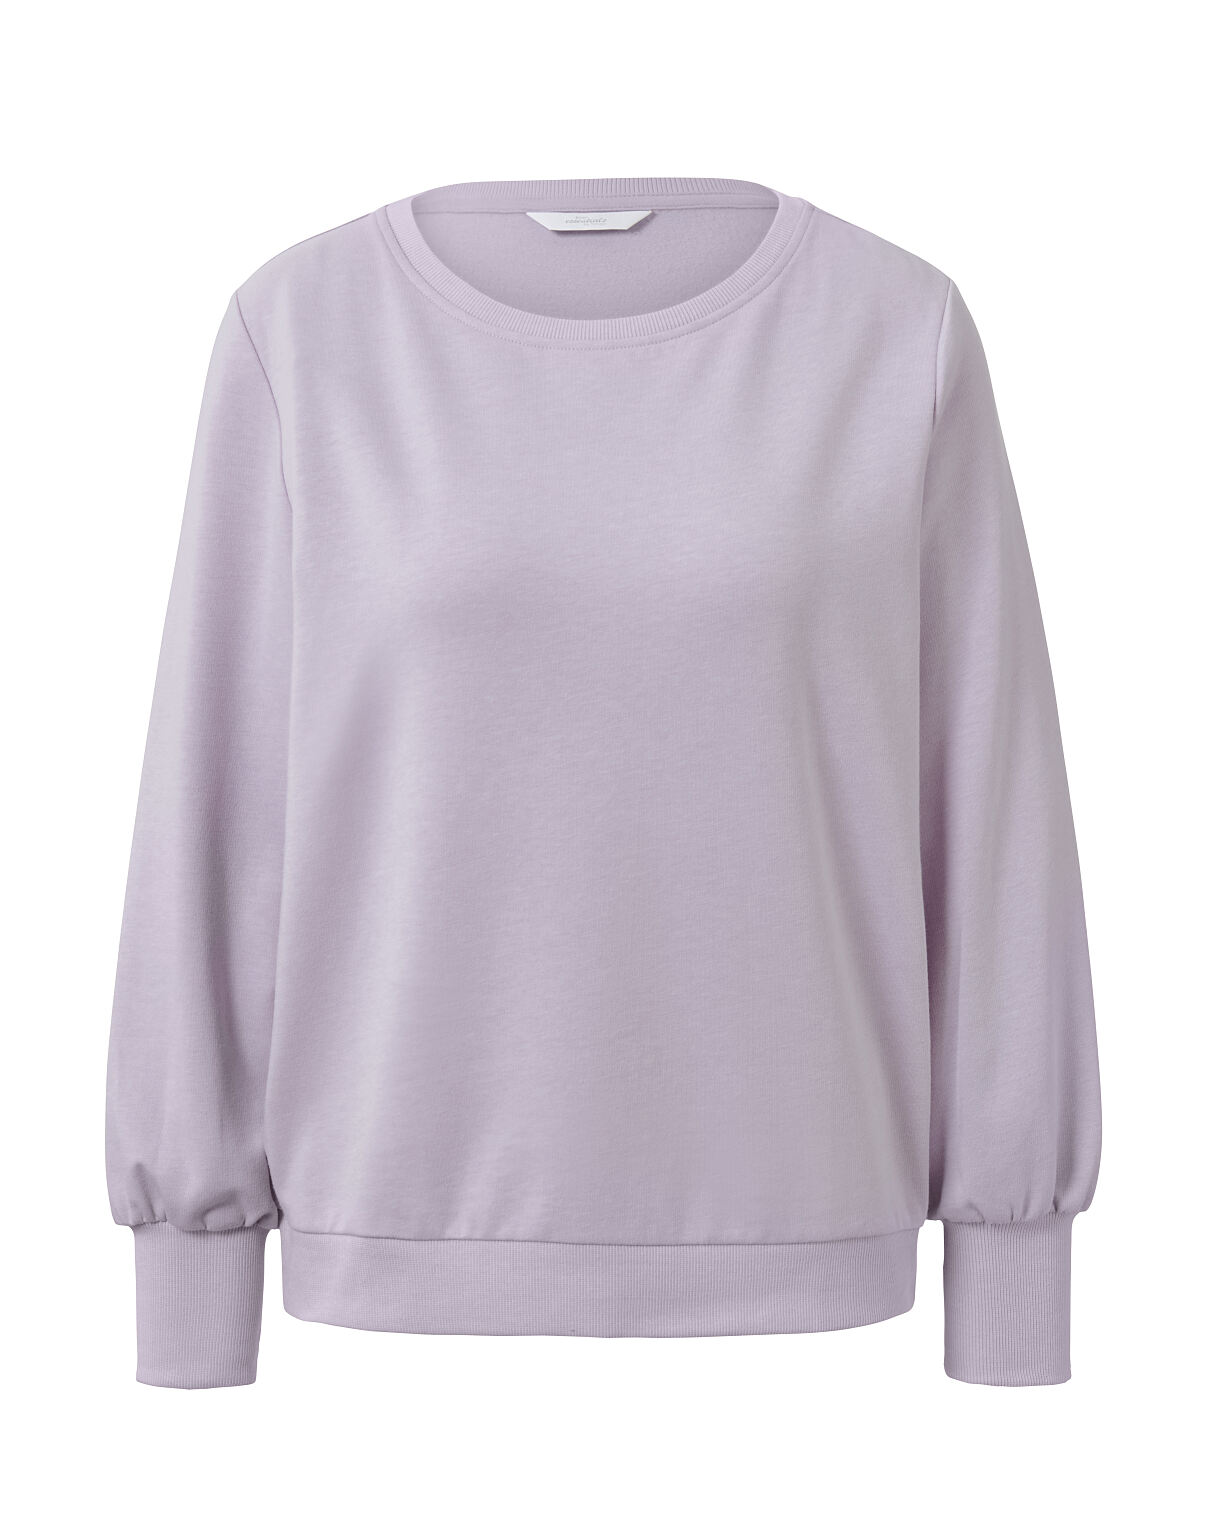 TCHIBO_128414 Loungewear-Sweater FS 1 09.23